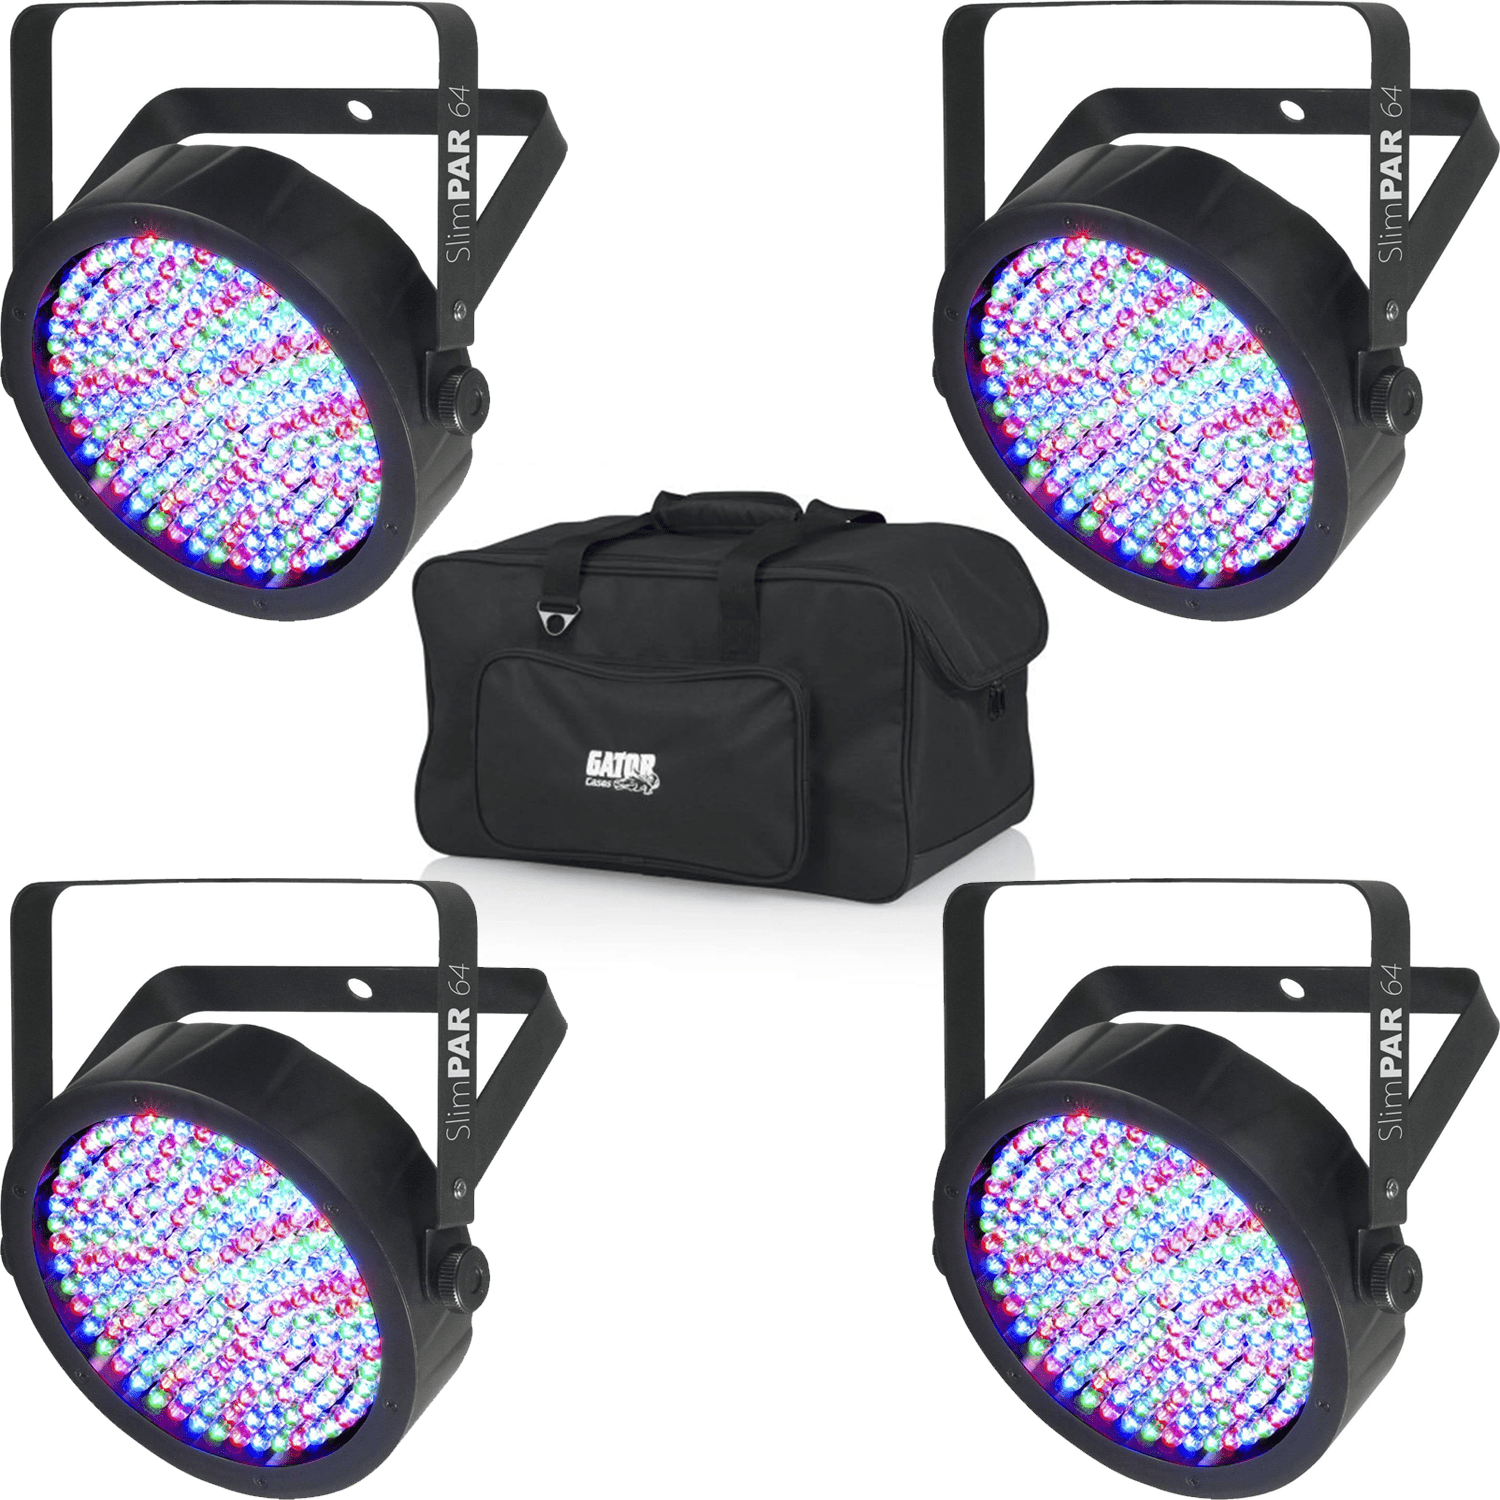 Chauvet SlimPAR 64 RGB LED Wash Light 4-Pack with Gator Bag - PSSL ProSound and Stage Lighting